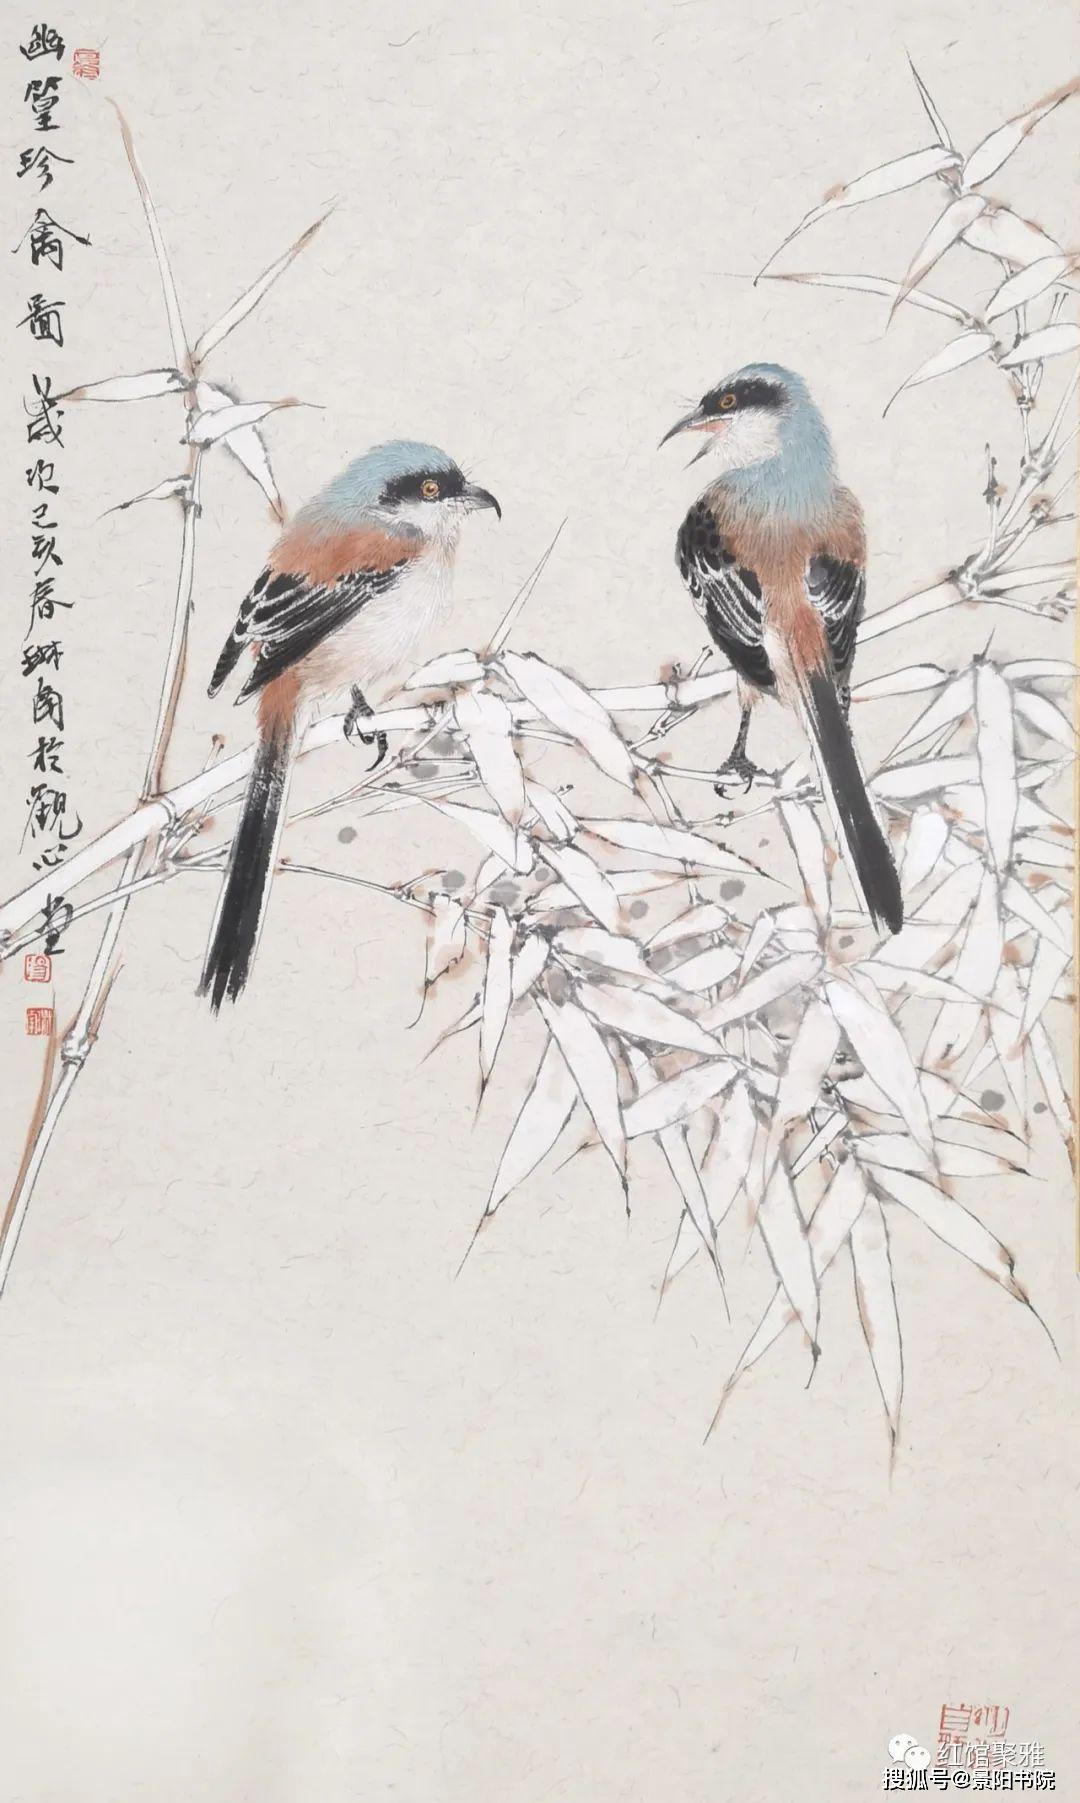 2020中国人民大学艺术学院研修班导师汤琳南工笔与写意花鸟画工作室